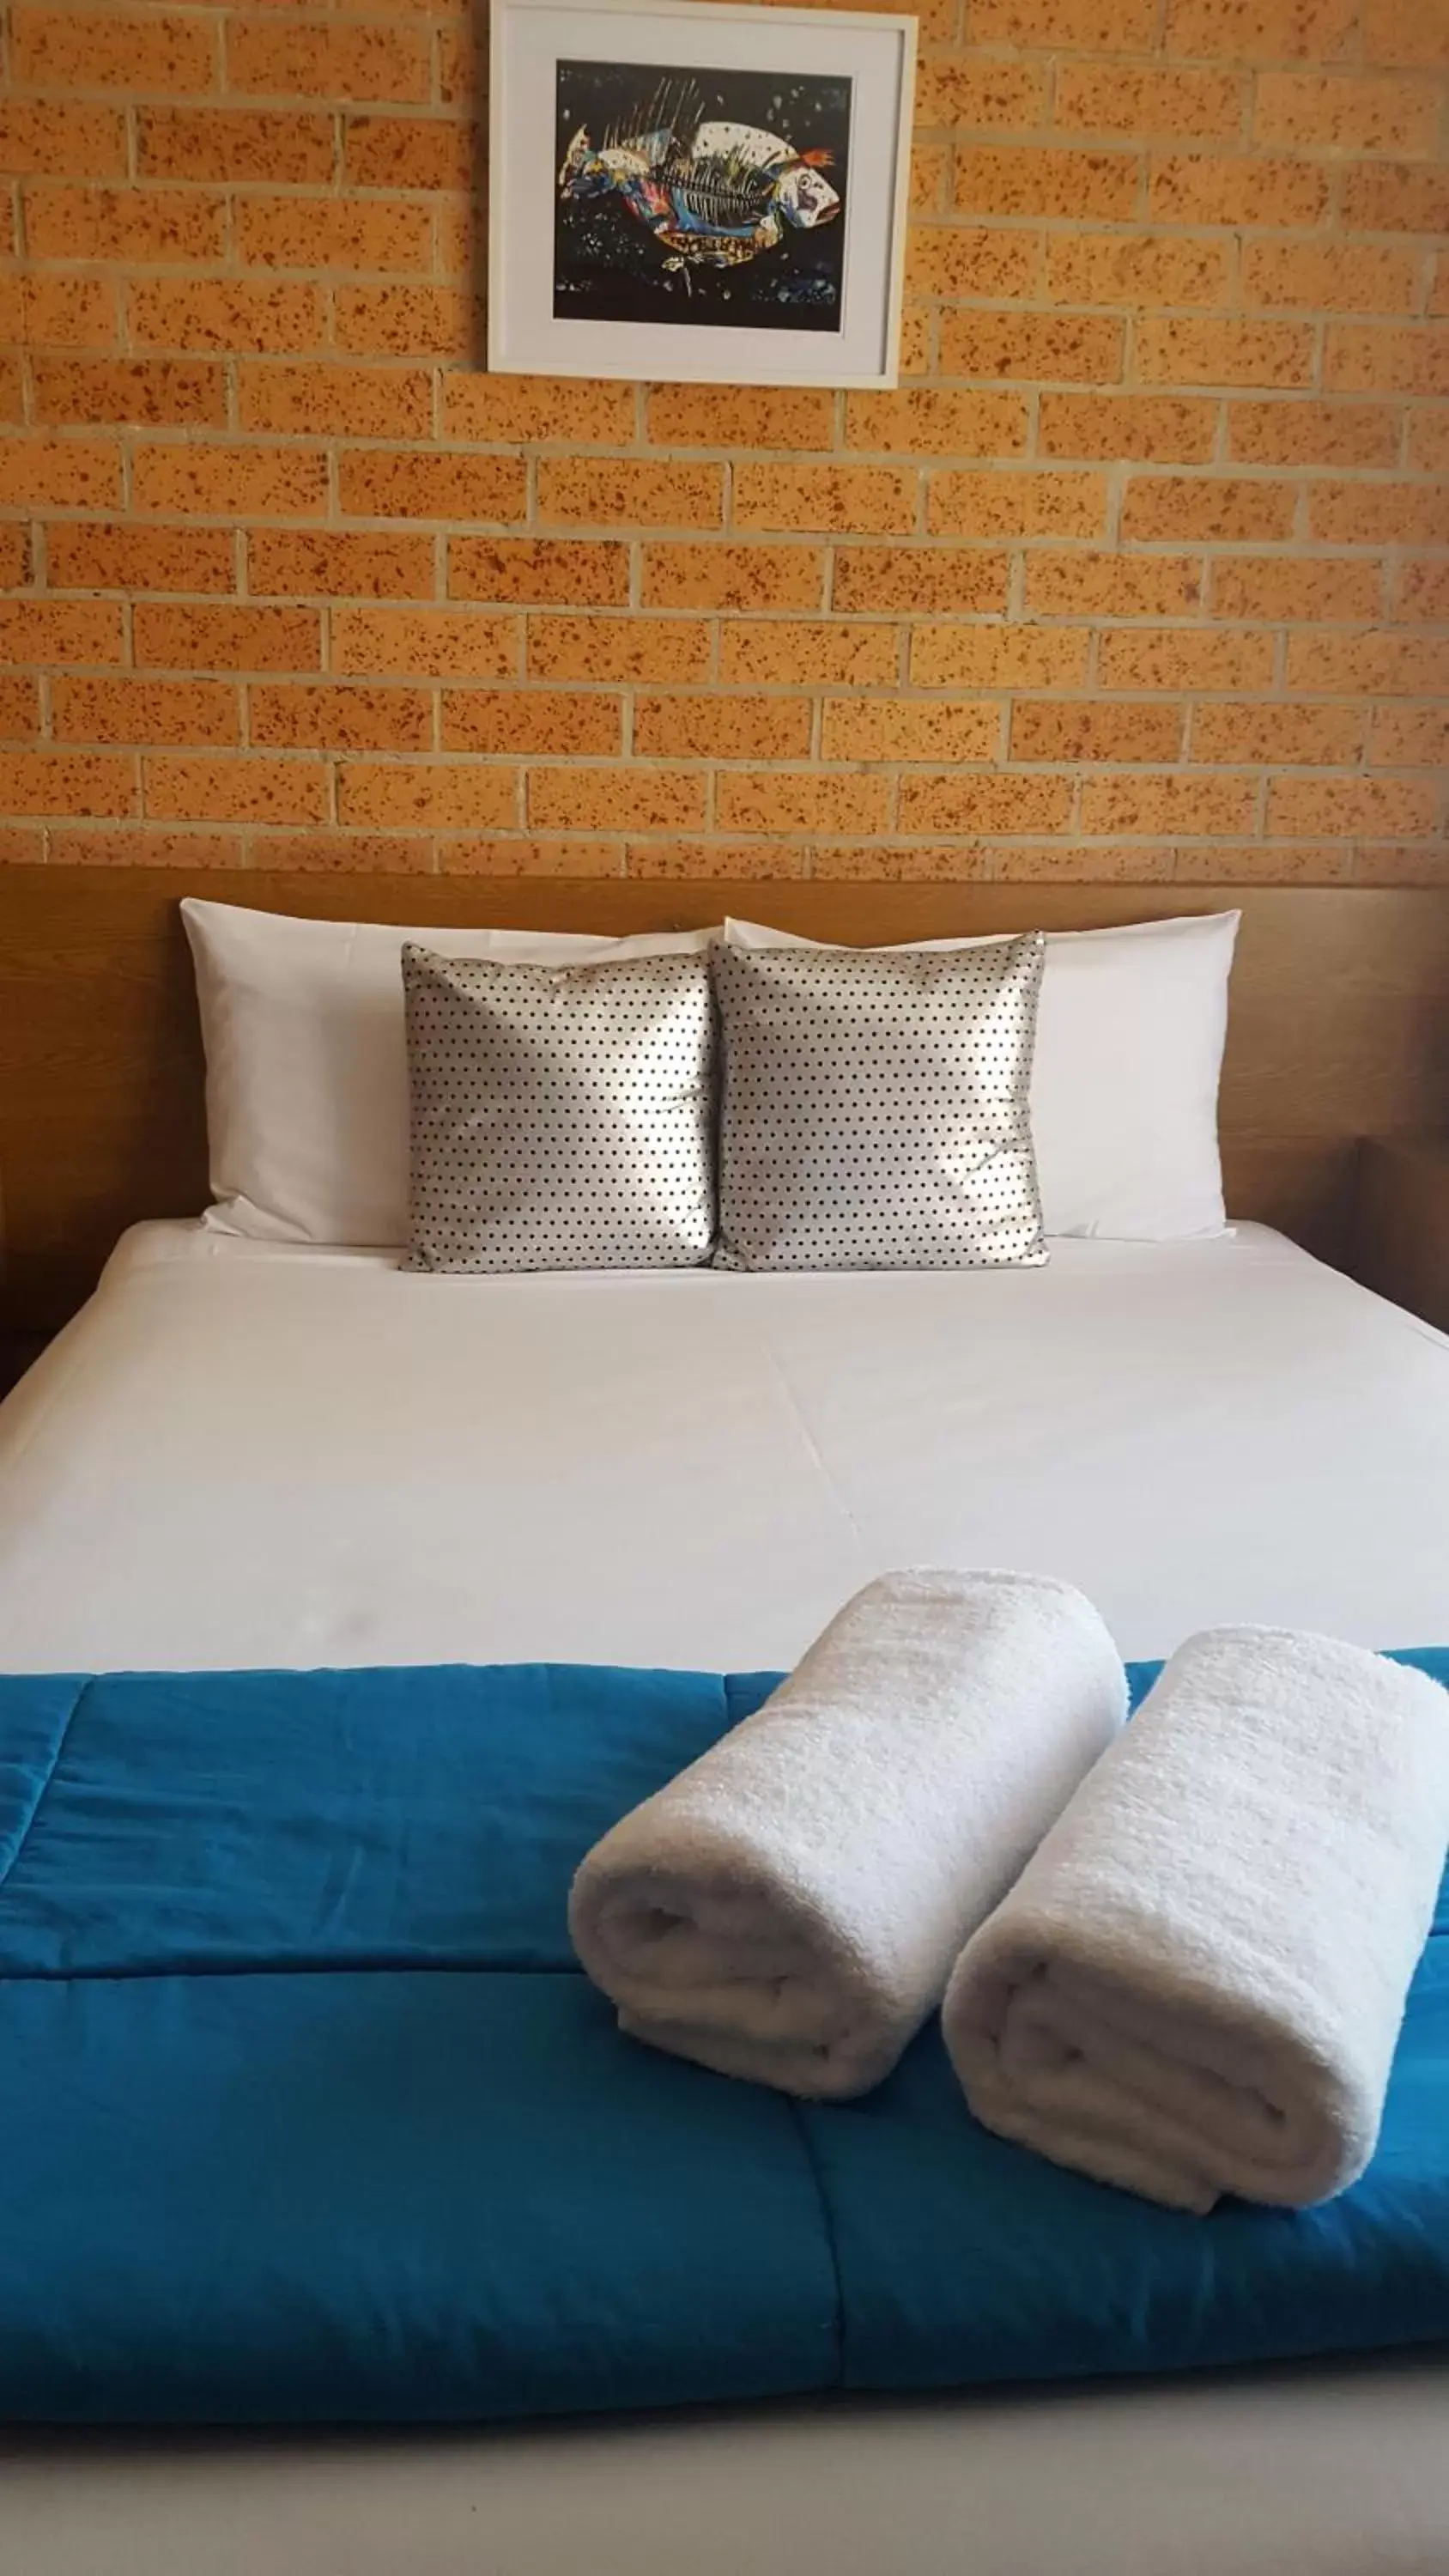 Bed in Royal Palms Motor Inn